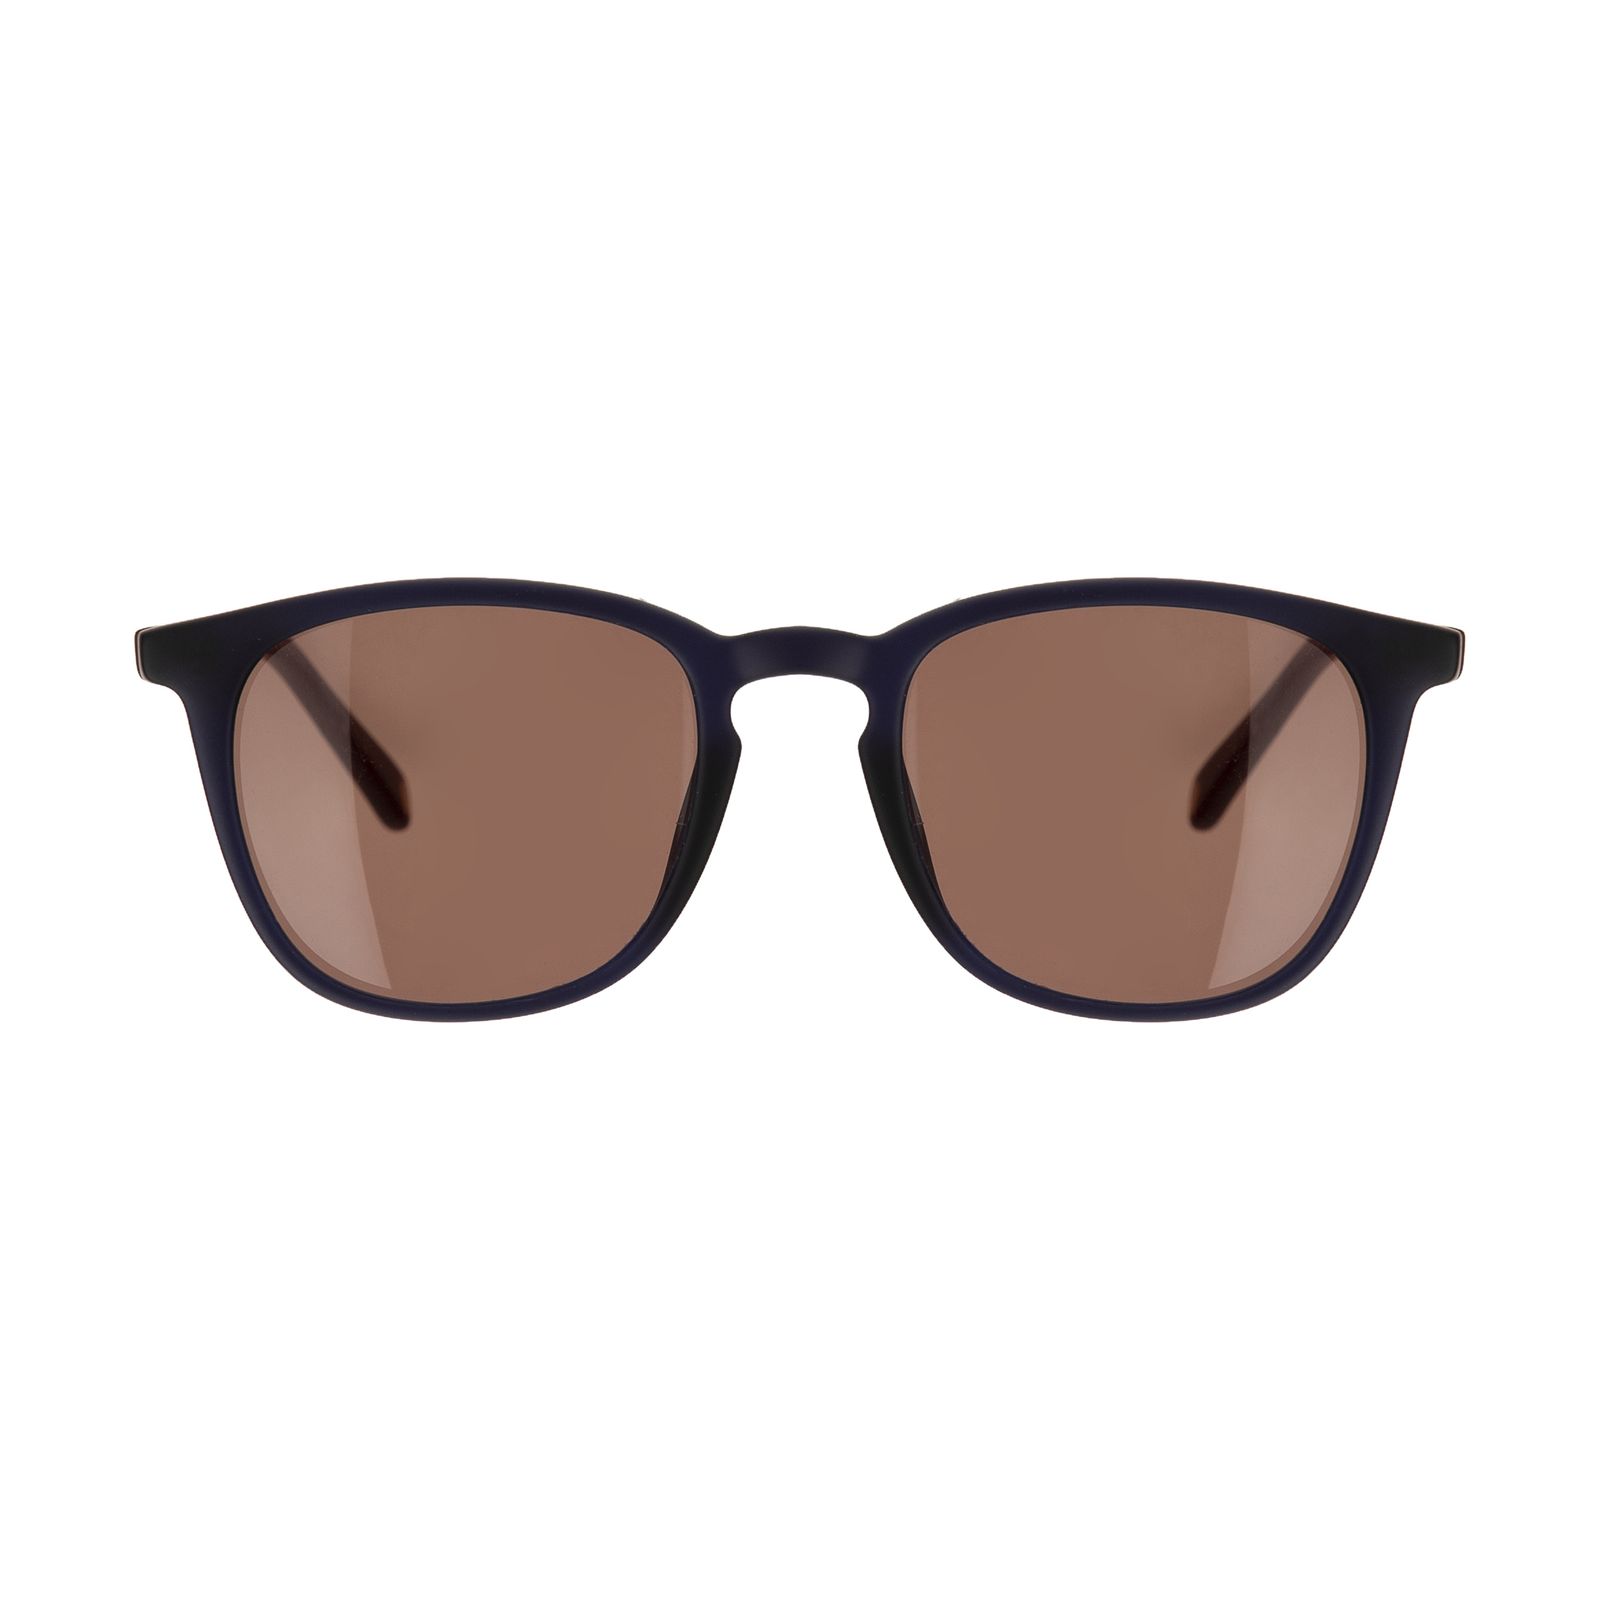 عینک آفتابی مردانه تد بیکر مدل TB 1532 901 -  - 1